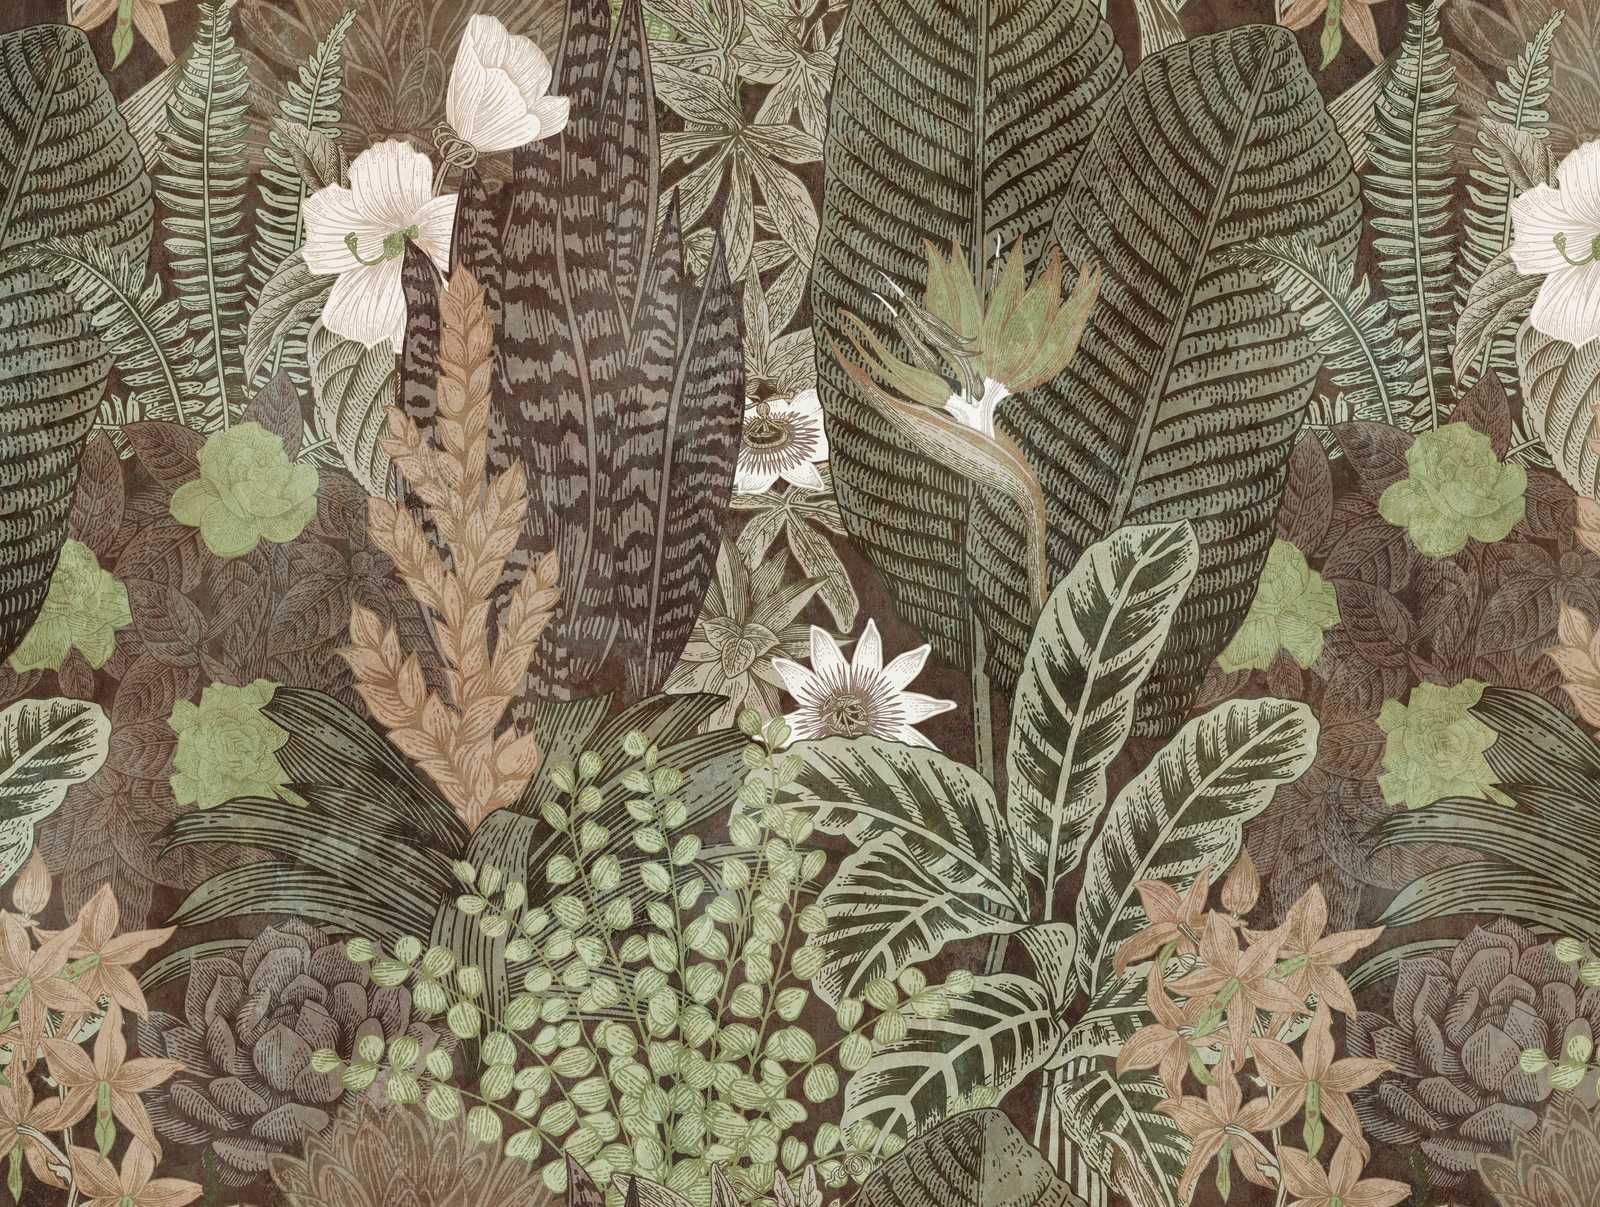             Nouveauté papier peint - papier peint à motifs Nature Design style dessin, brun & vert
        